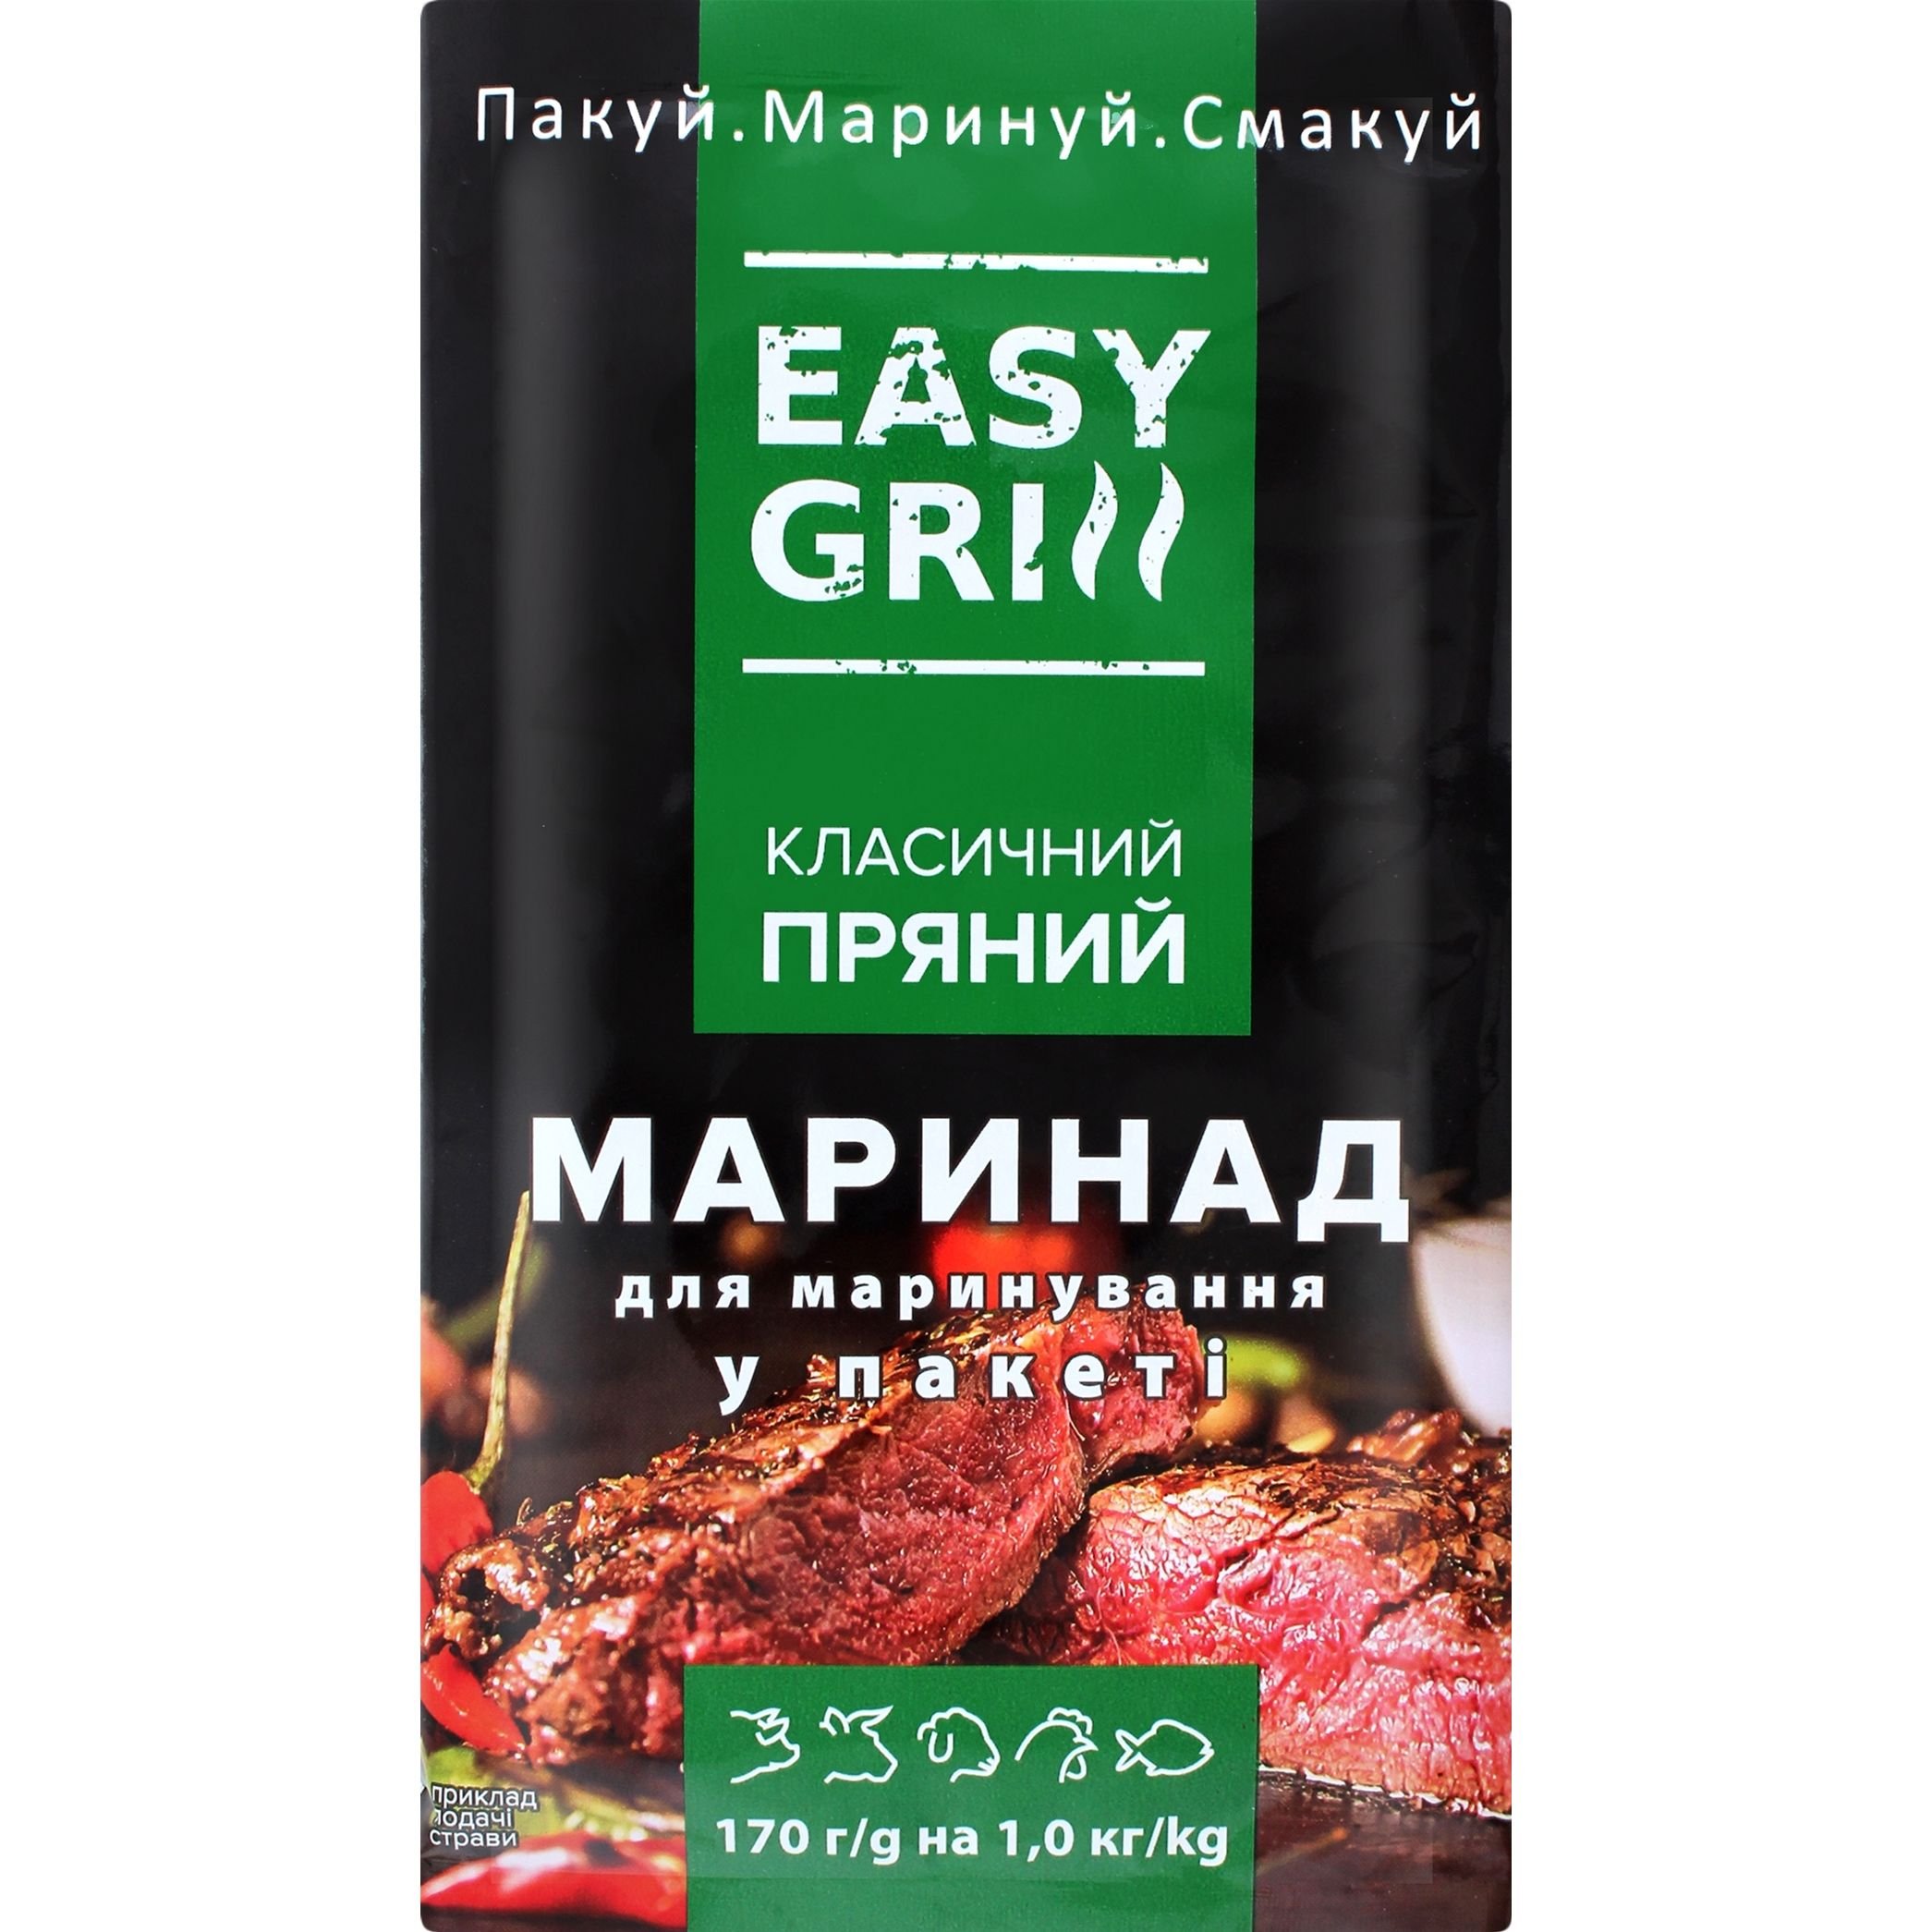 Маринад Easy grill Класичний пряний у пакеті, 170 г (831698) - фото 1